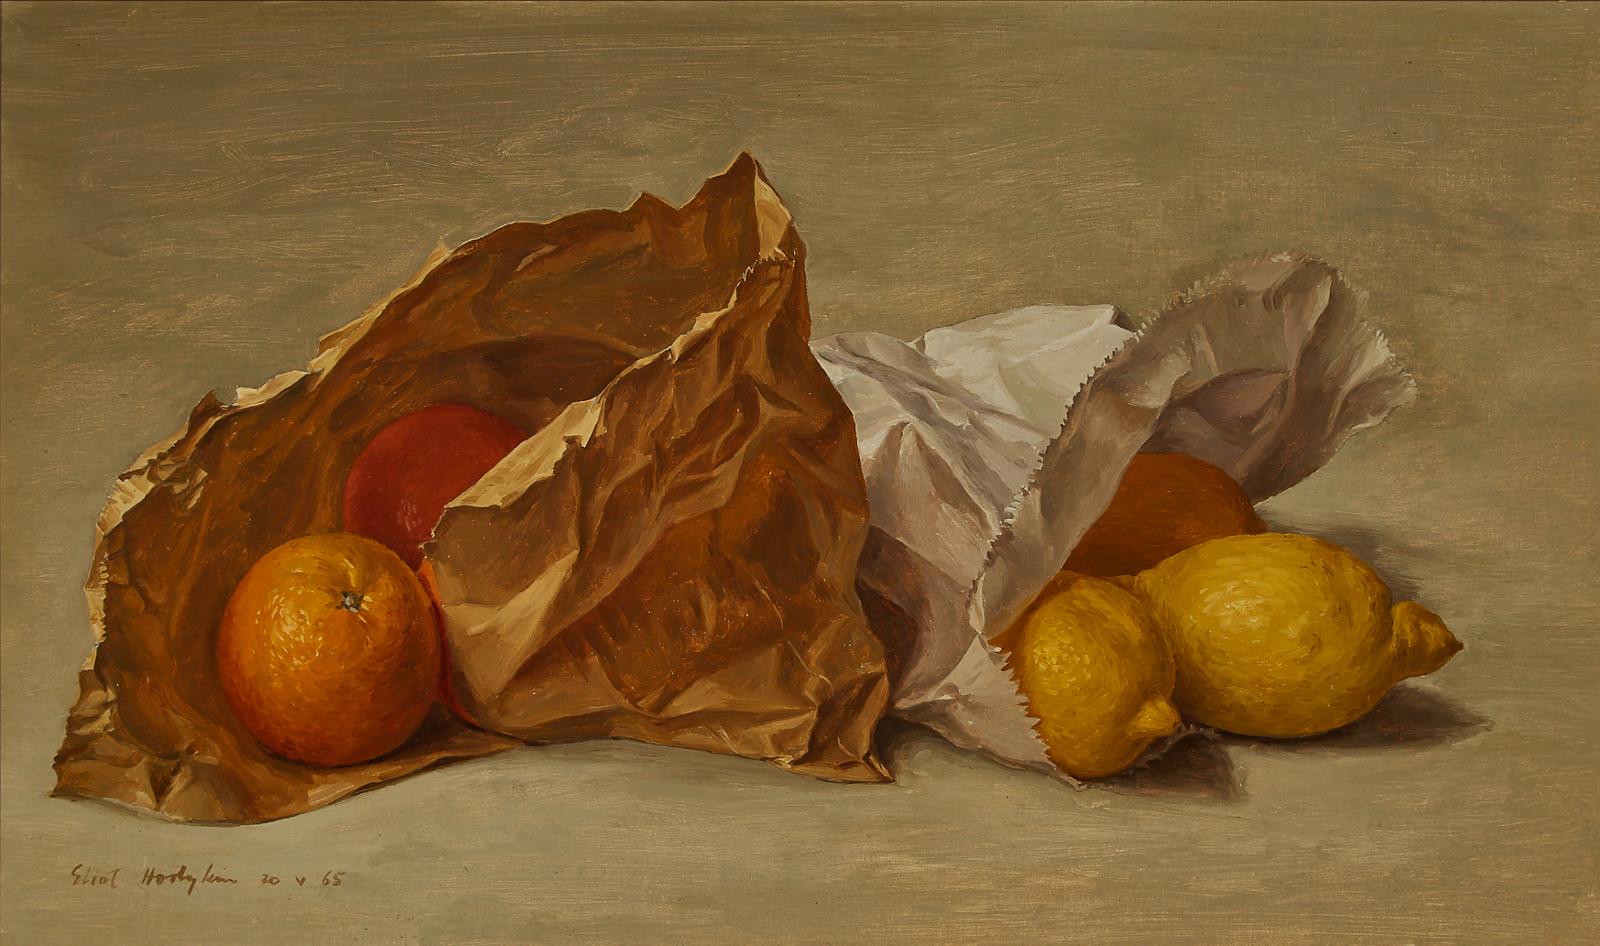 Eliot Hodgkin (1905-1987) - Oranges And Lemons In Paper Bags, 1965